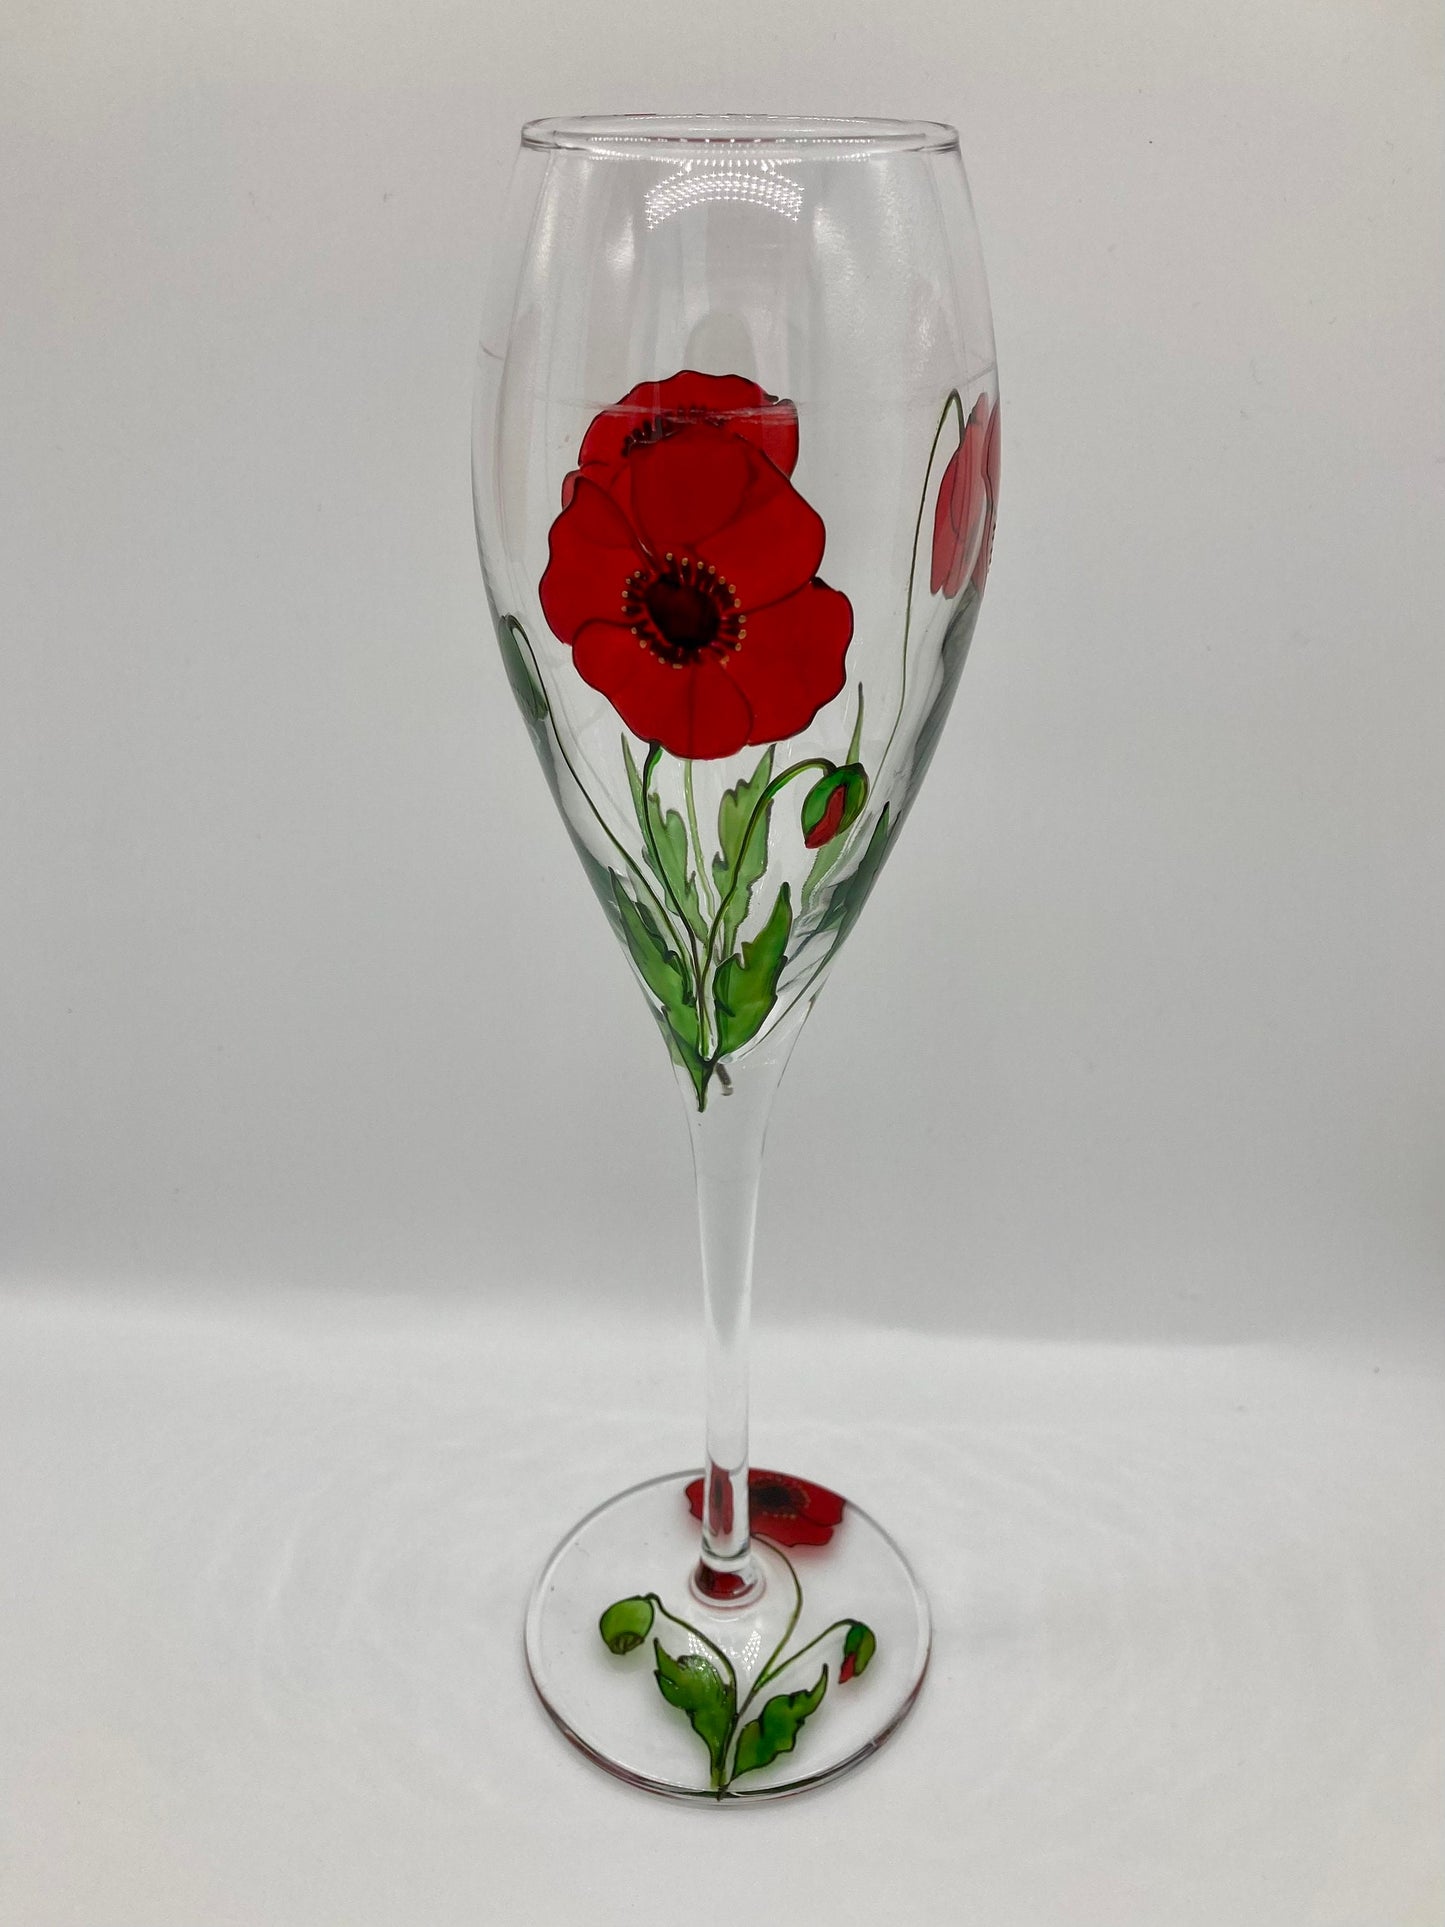 Poppy champagne/prosecco glass